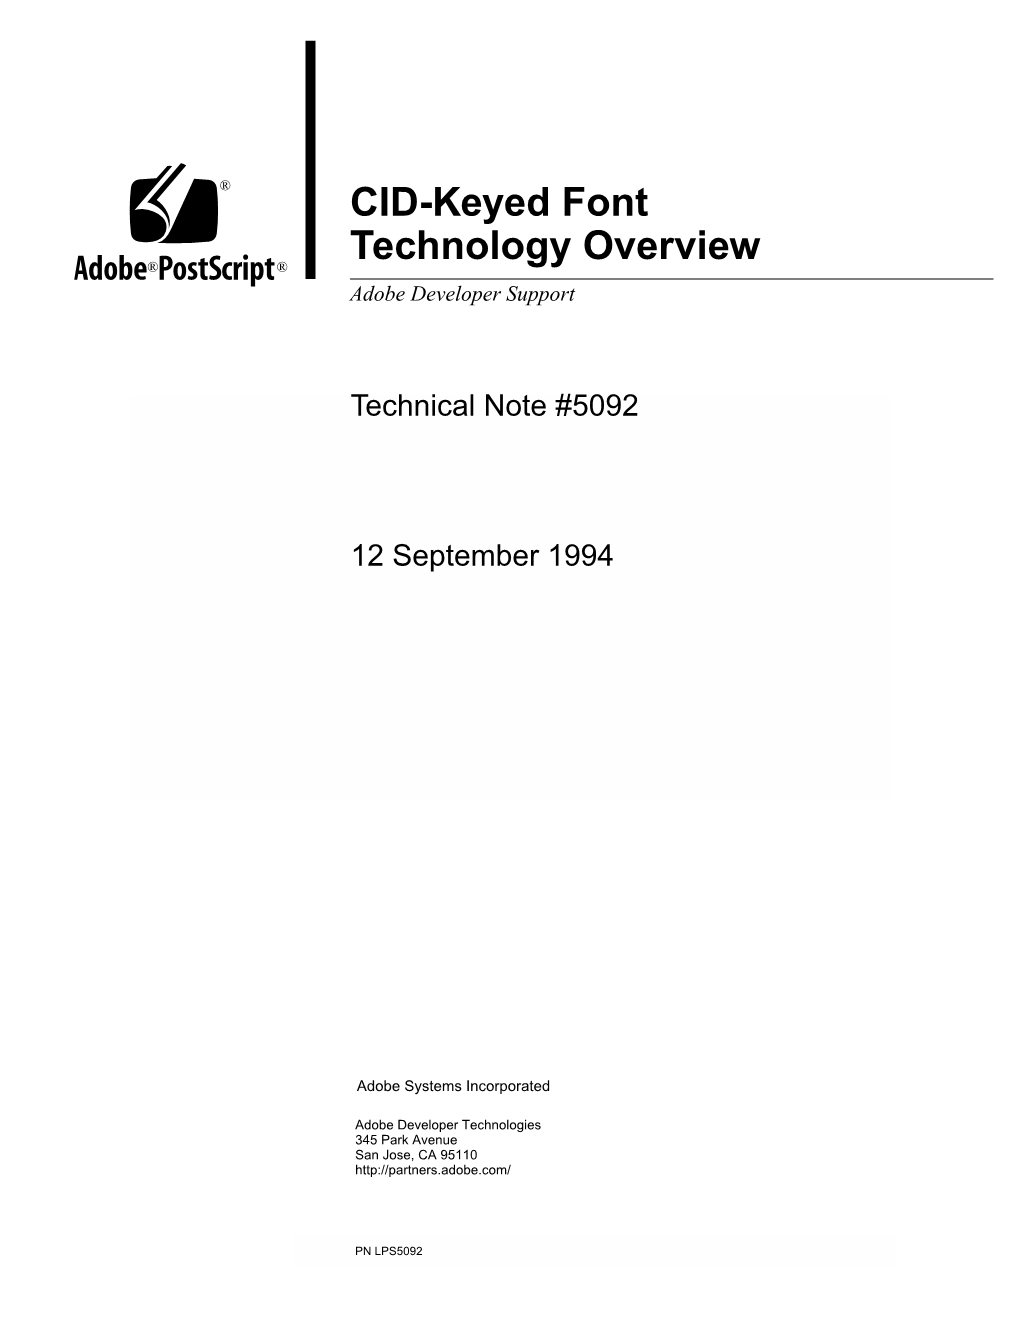 CID-Keyed Font Technology Overview ®® Adobe Developer Support